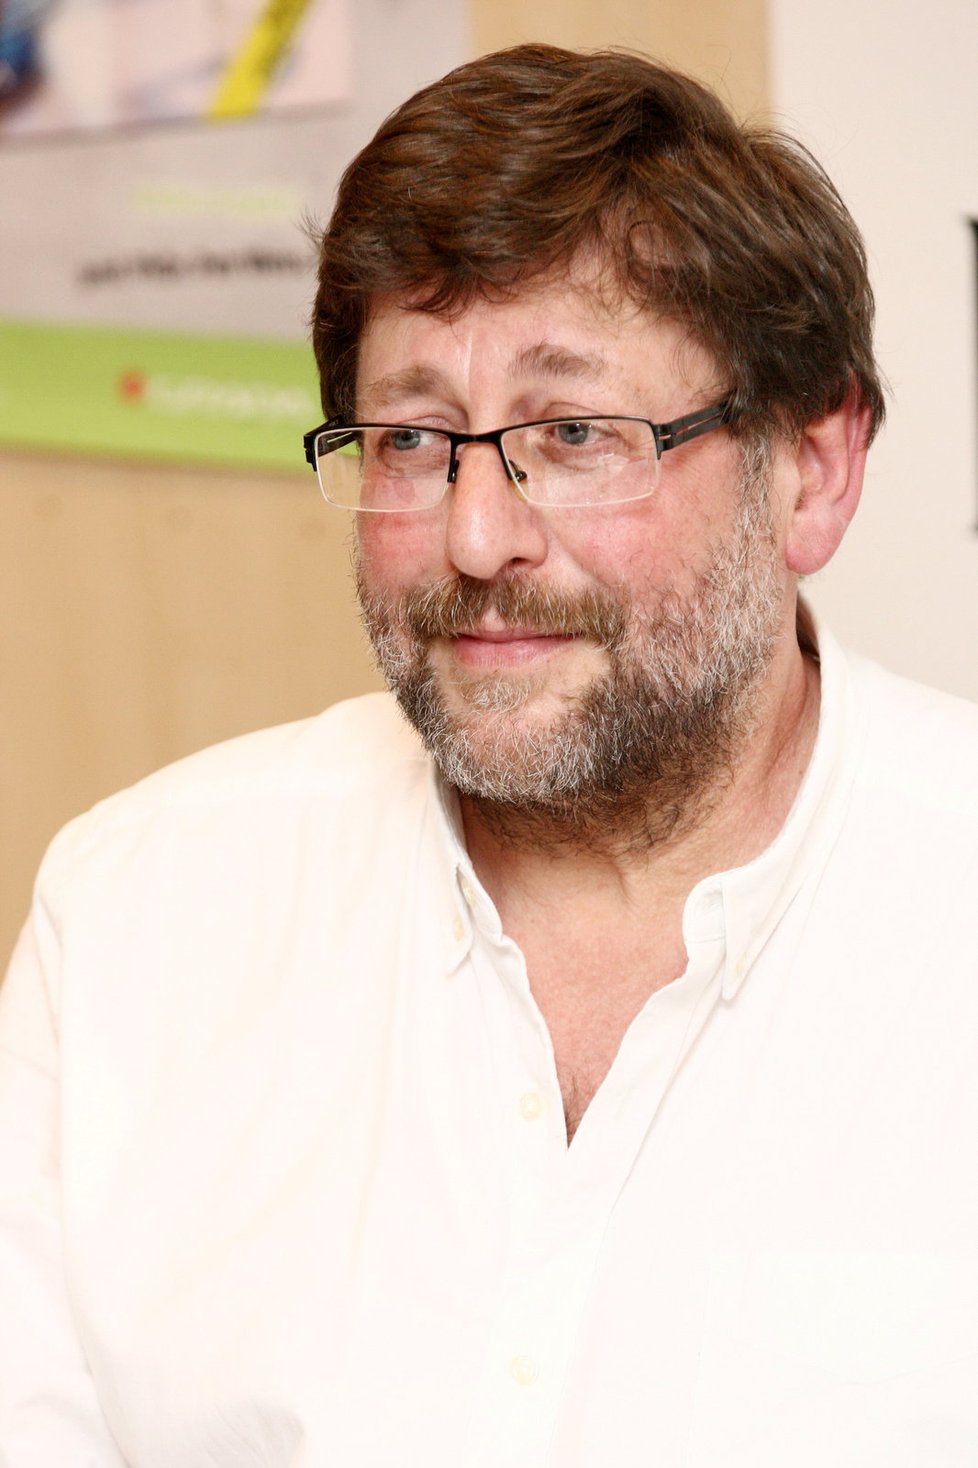 Sexuolog Petr Weiss